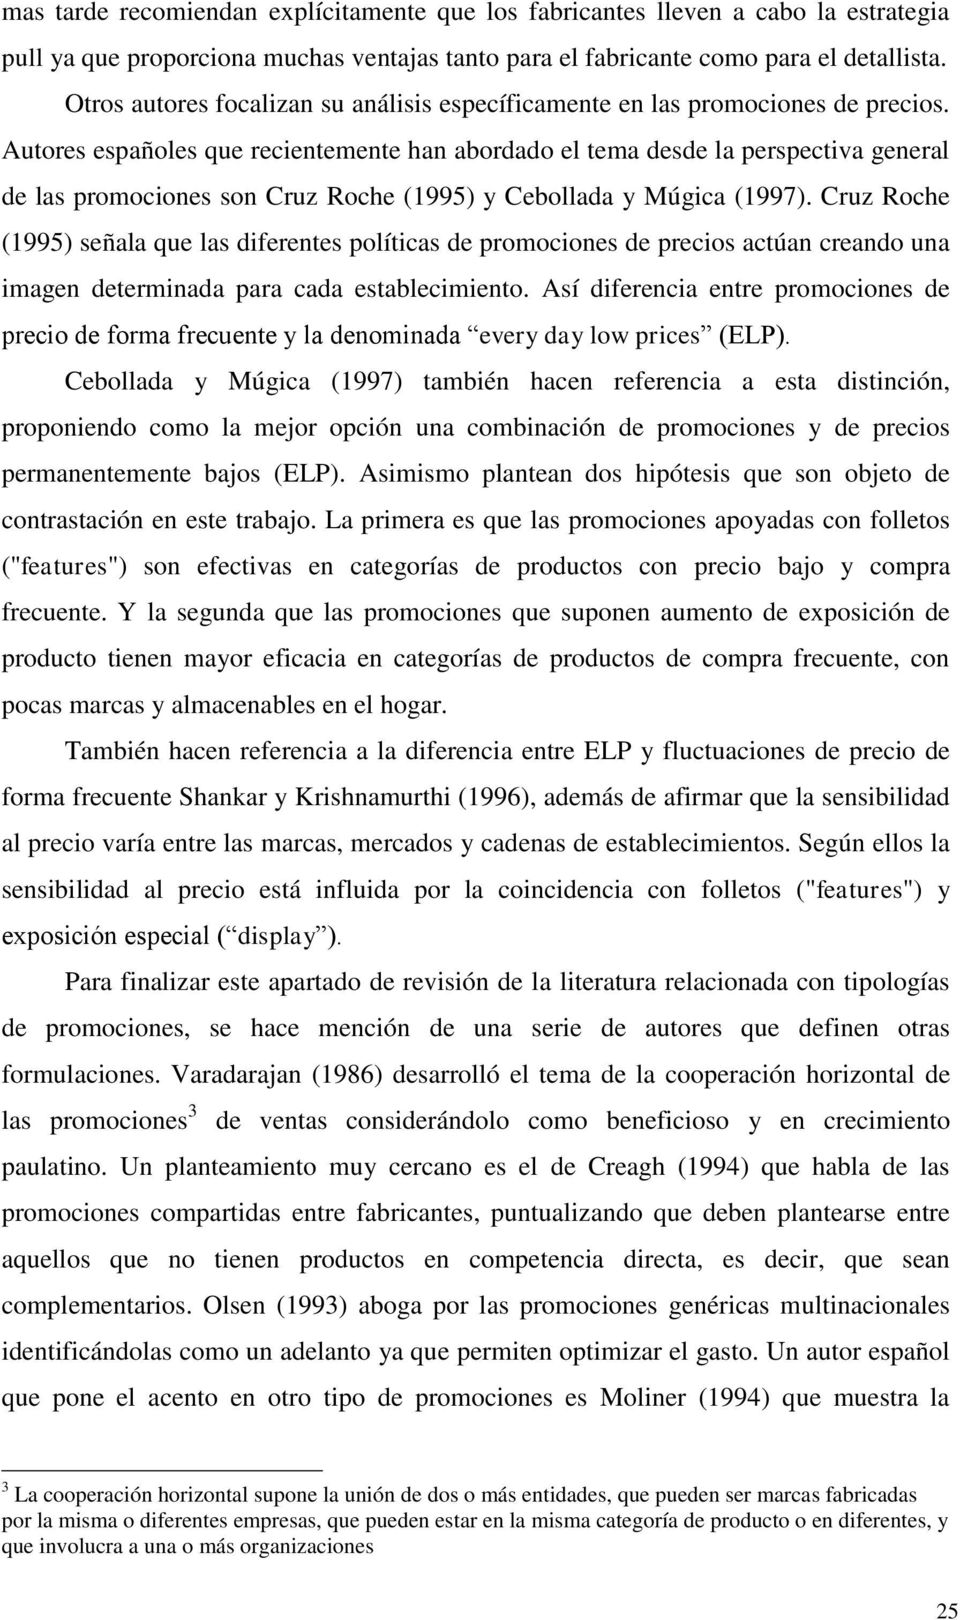 Autores españoles que recientemente han abordado el tema desde la perspectiva general de las promociones son Cruz Roche (1995) y Cebollada y Múgica (1997).